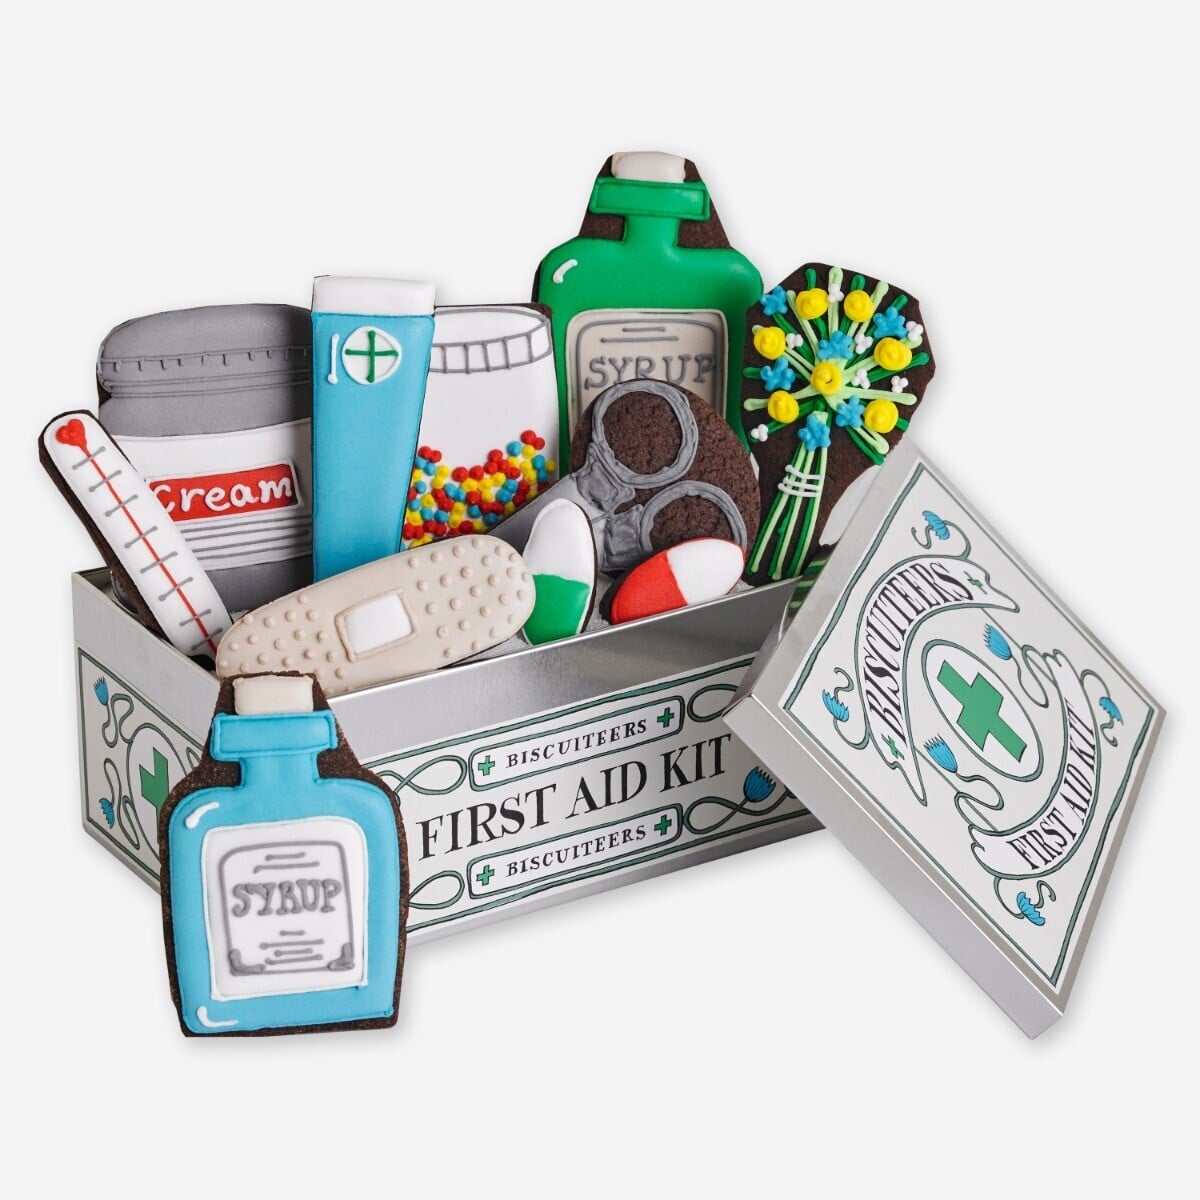 Biscuiteers First aid kit